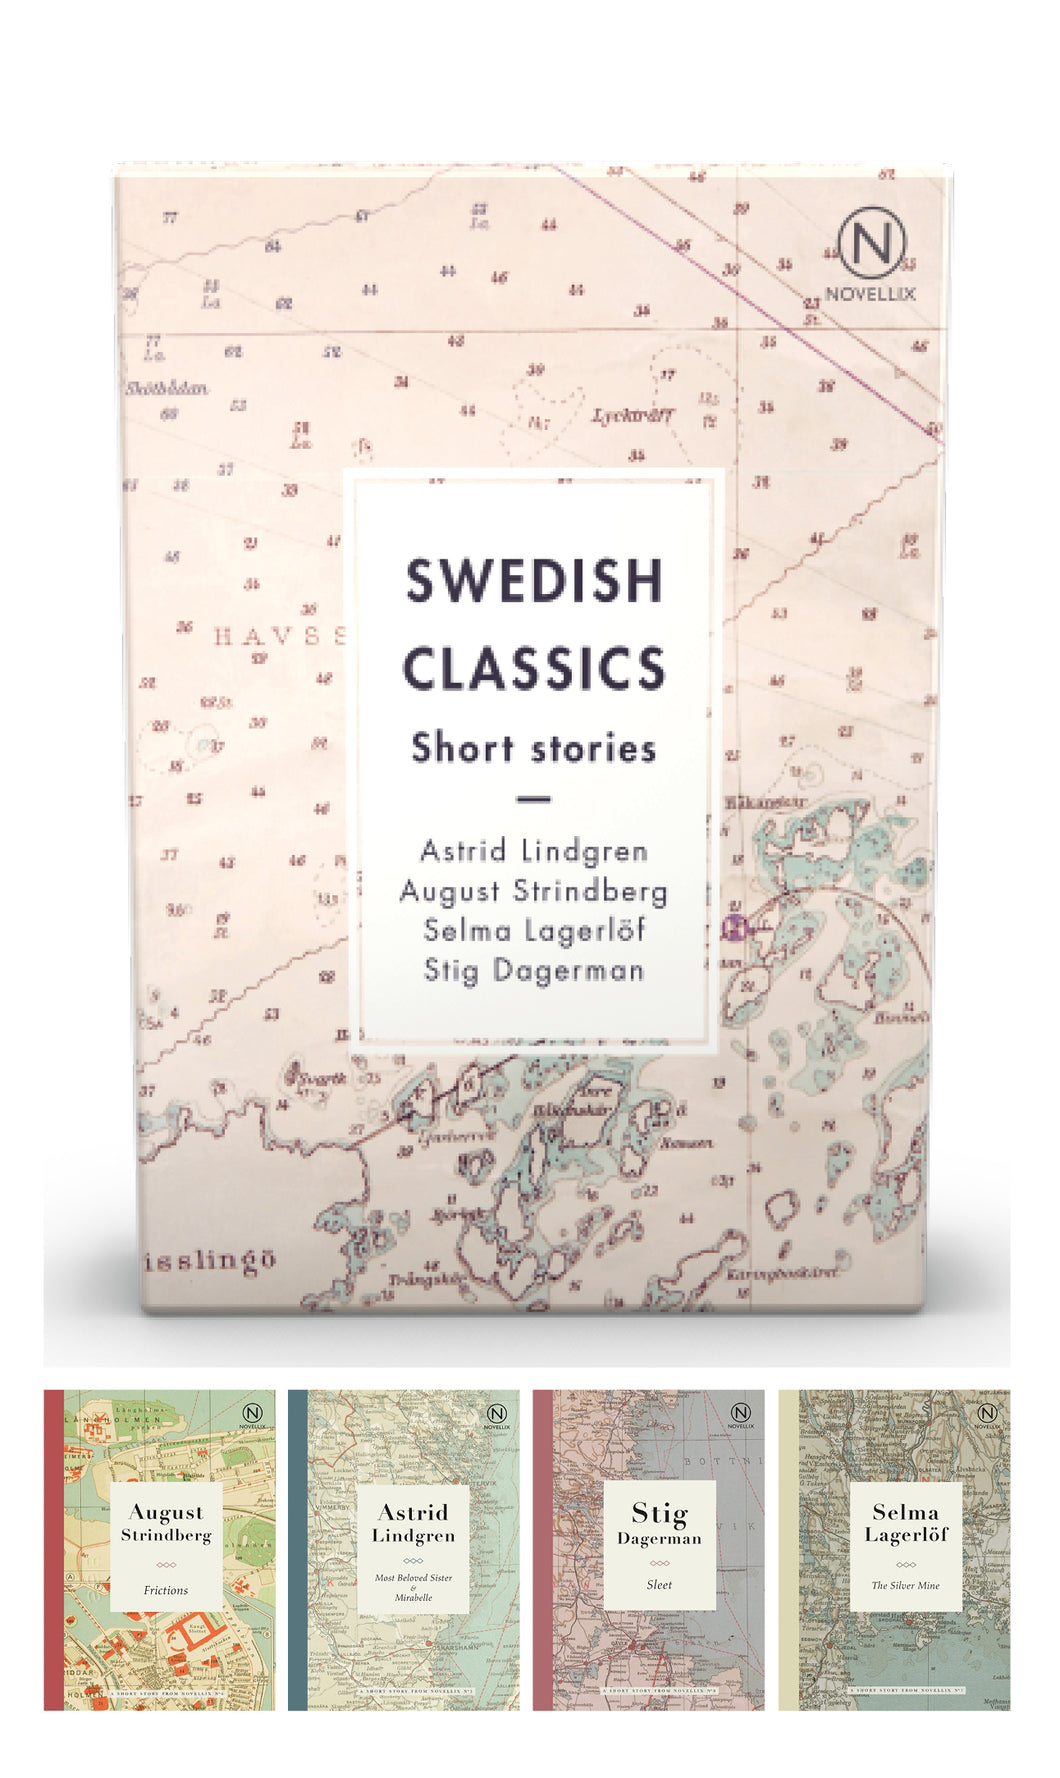 SWEDISH CLASSICS